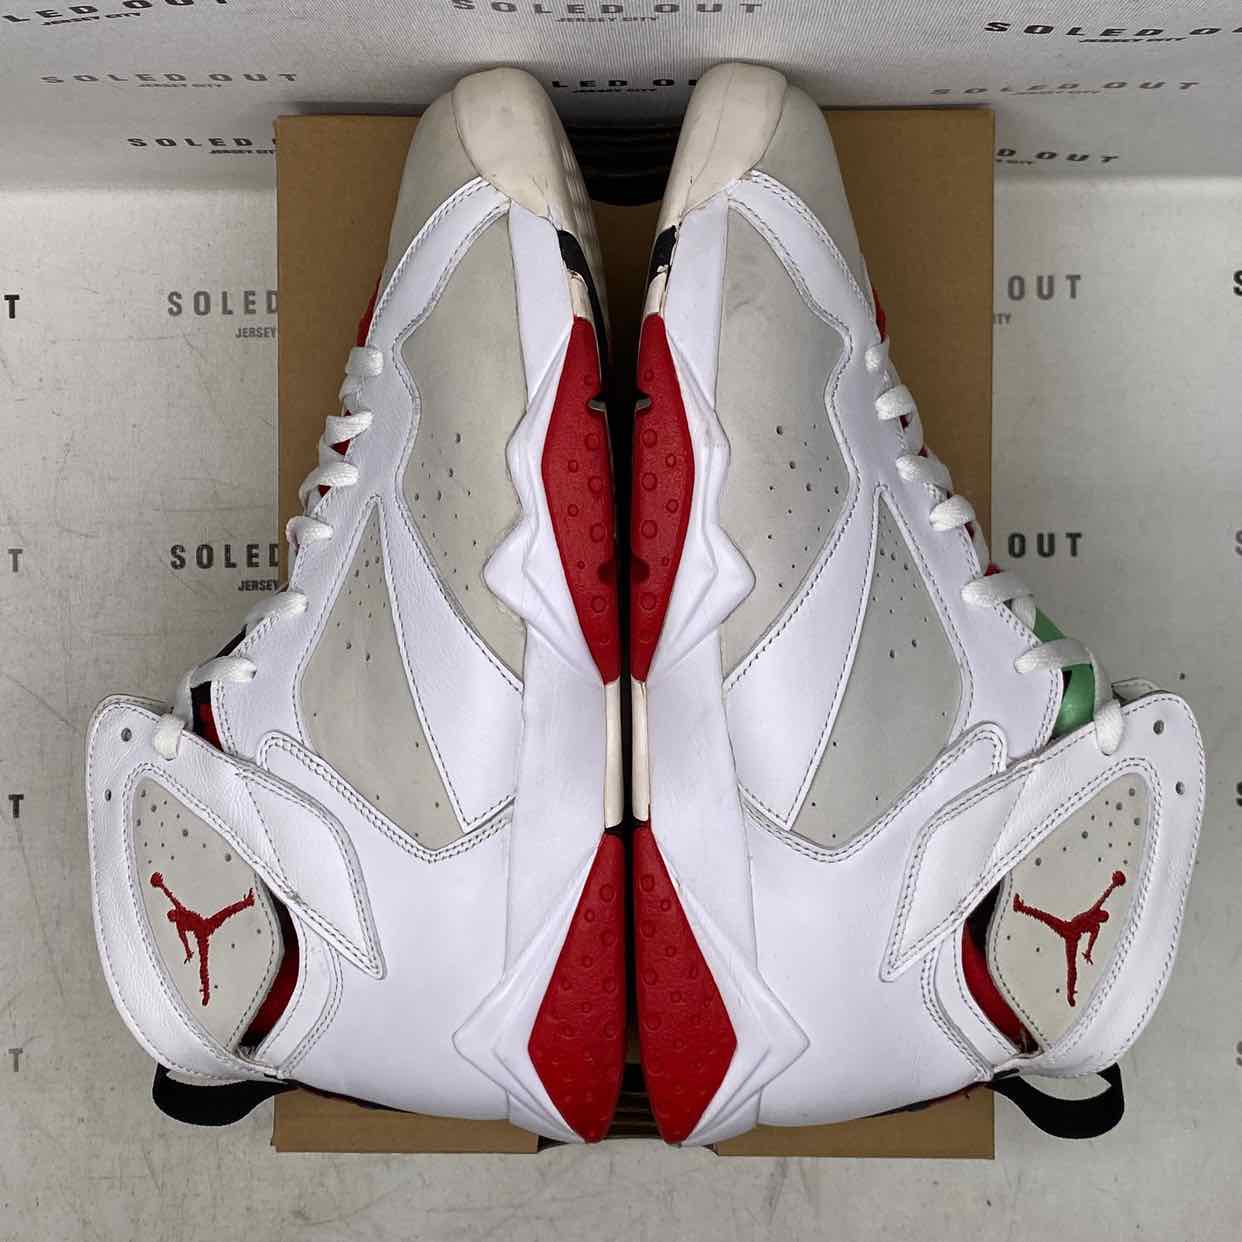 Air Jordan 7 Retro &quot;Hare&quot; 2014 Used Size 11.5